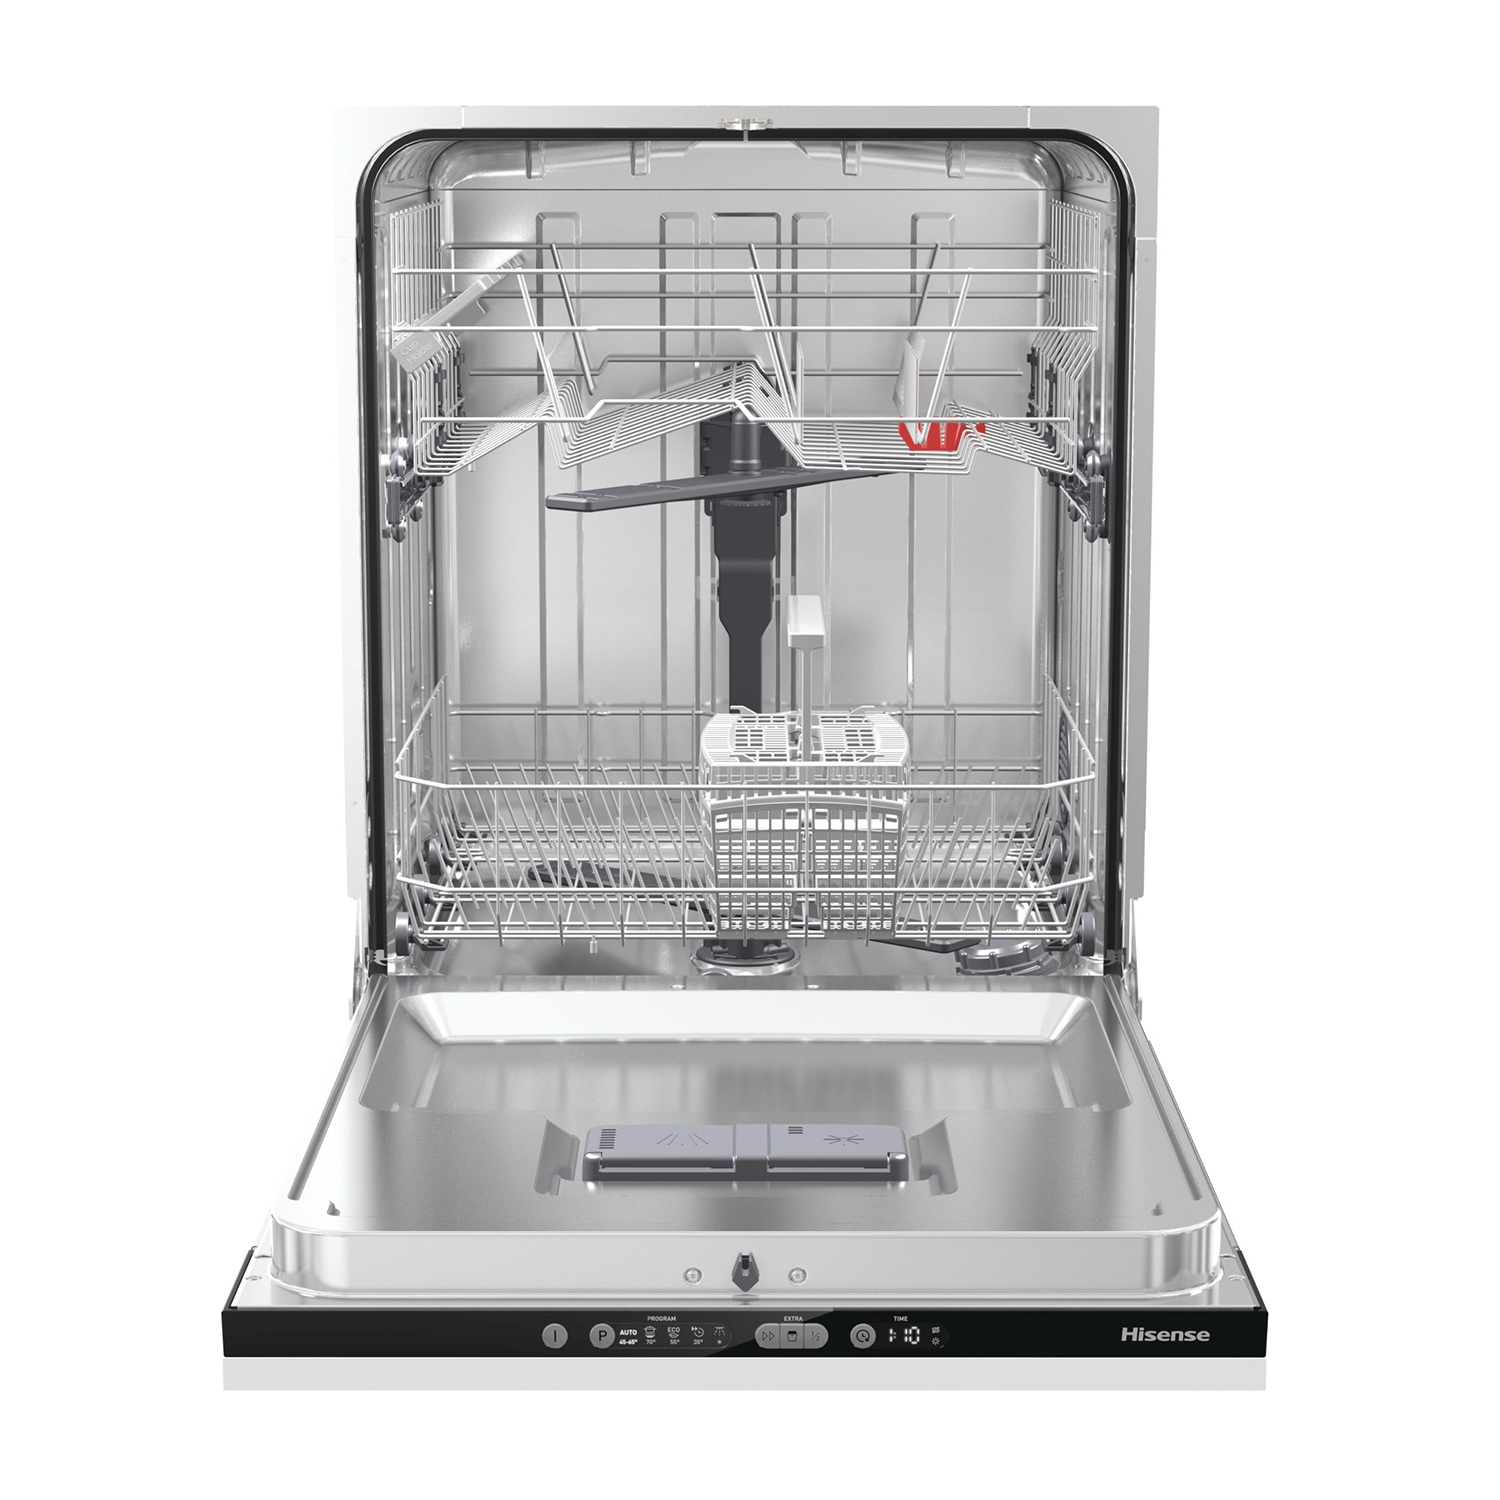 Hisense HV651D60UK Integrated Full Size Dishwasher - 13 Place Settings - 3